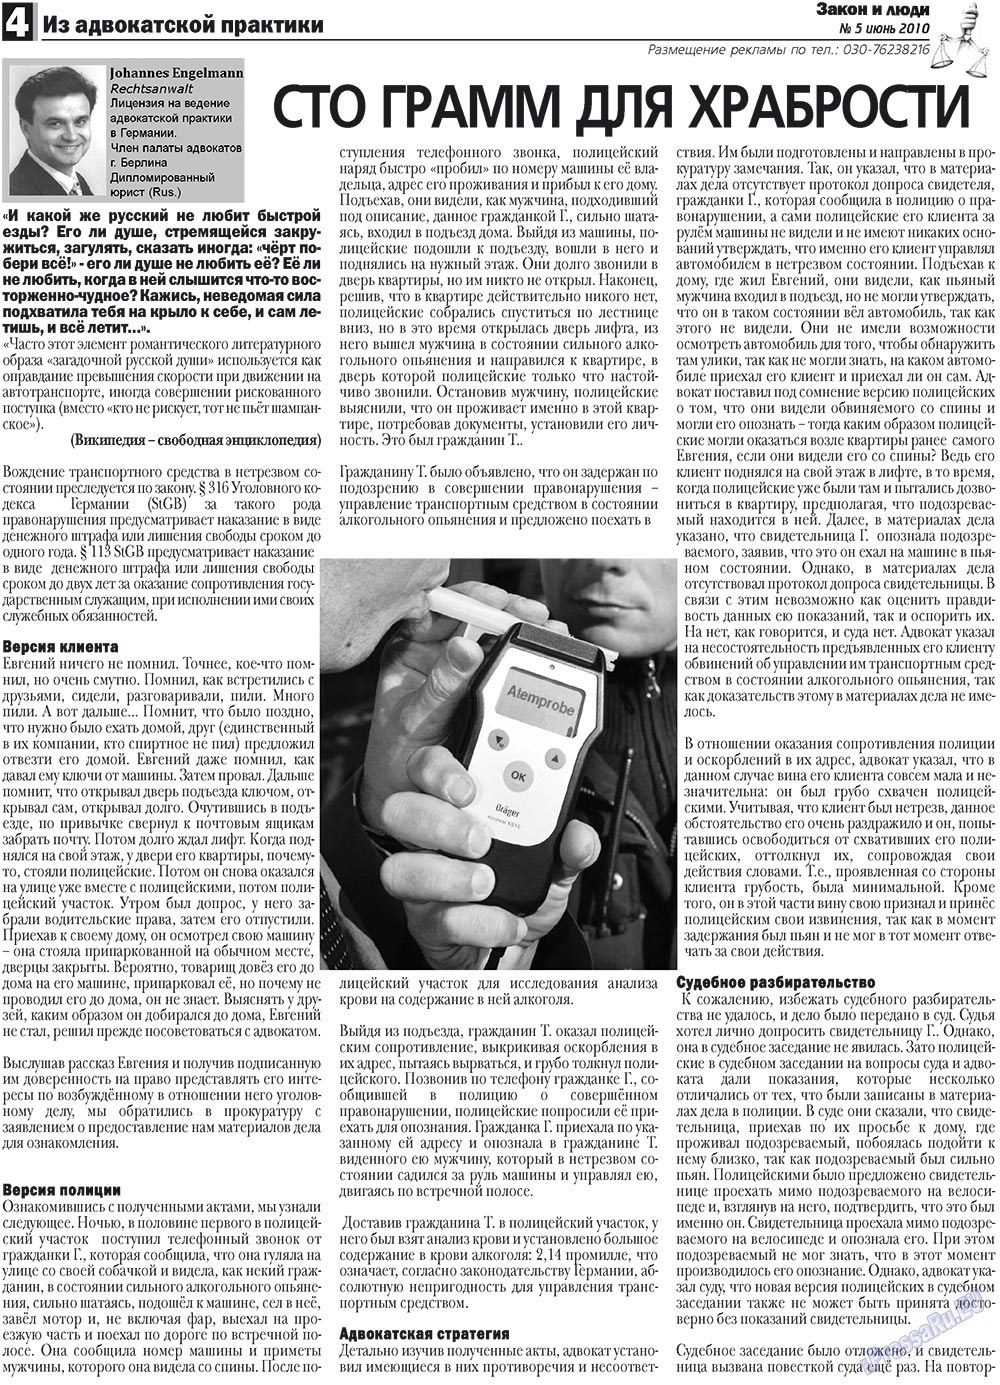 Закон и люди, газета. 2010 №5 стр.4